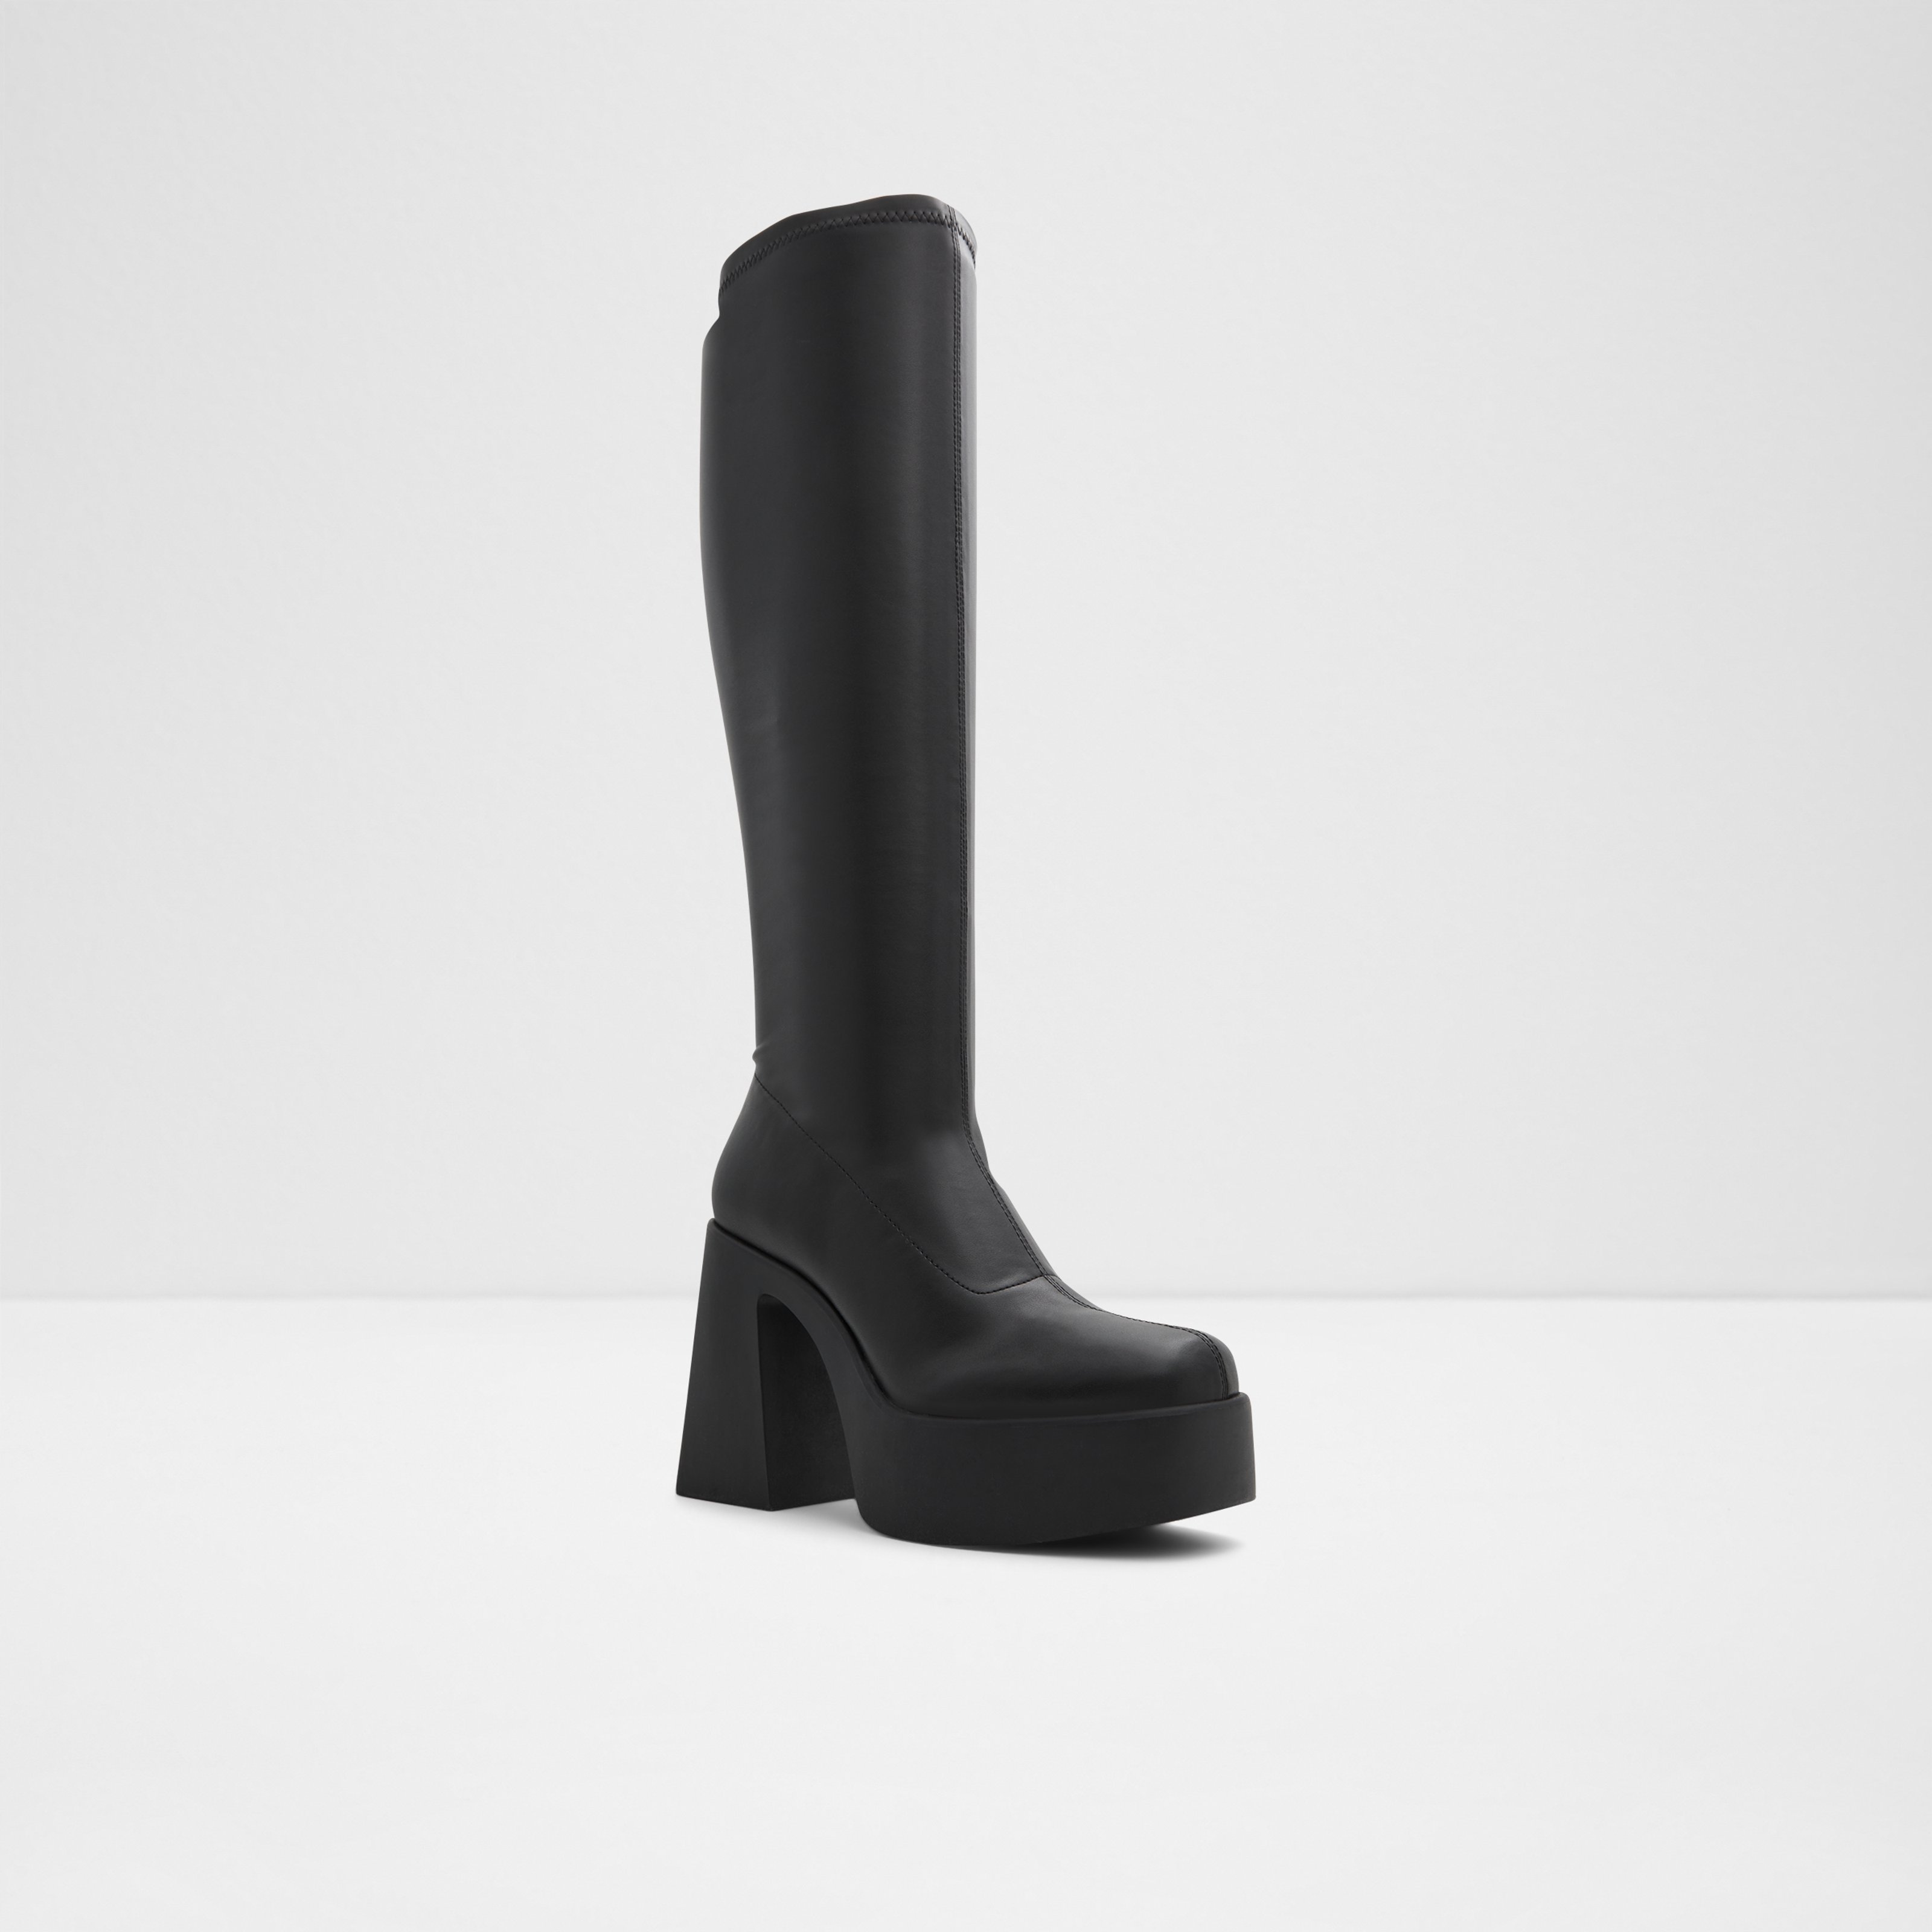 Moulin Black Women's Dress boots | ALDO US